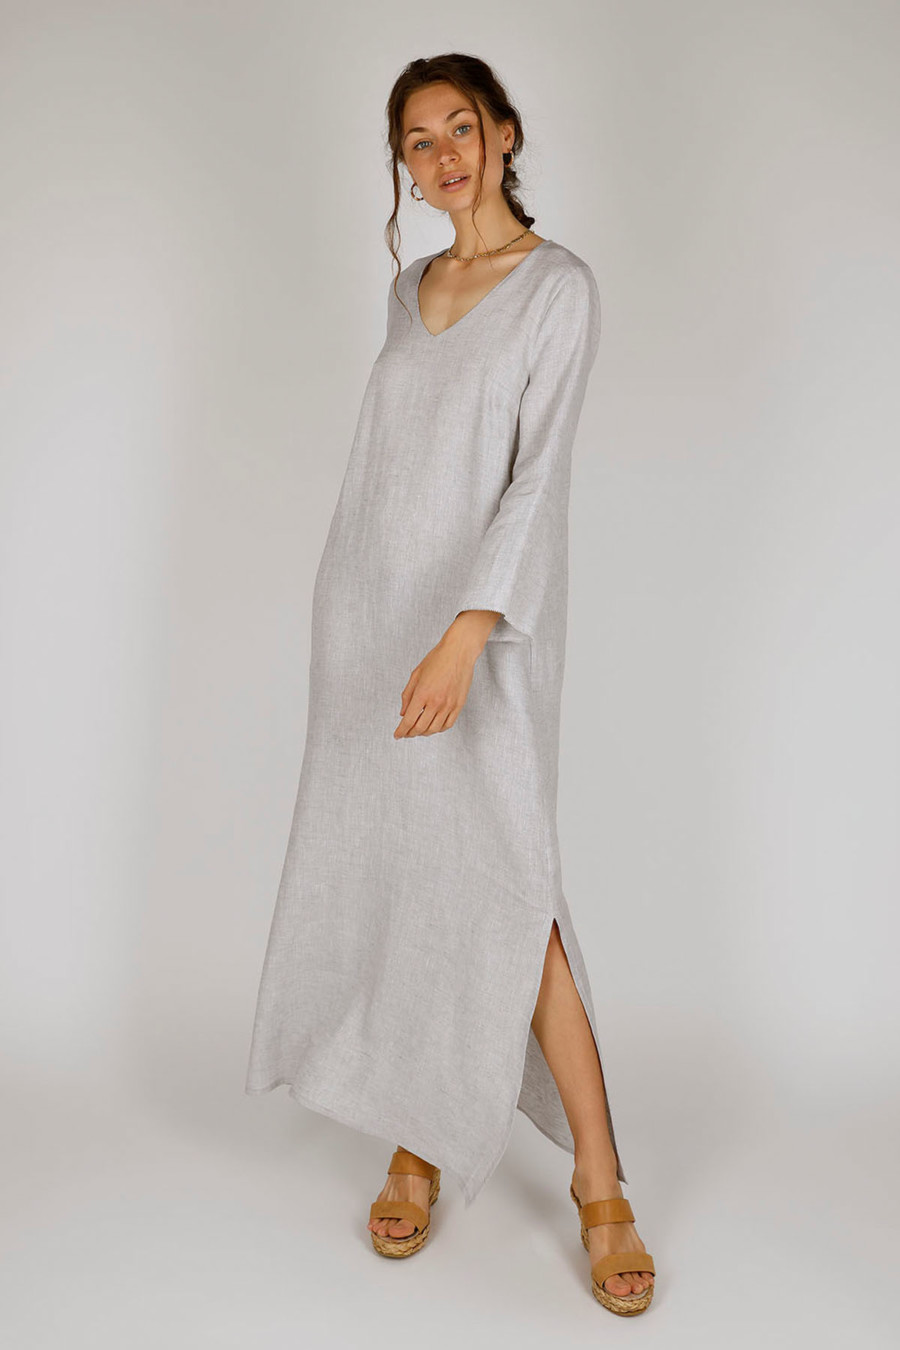 MALAGA - Maxi length linen dress - Colour: Silver